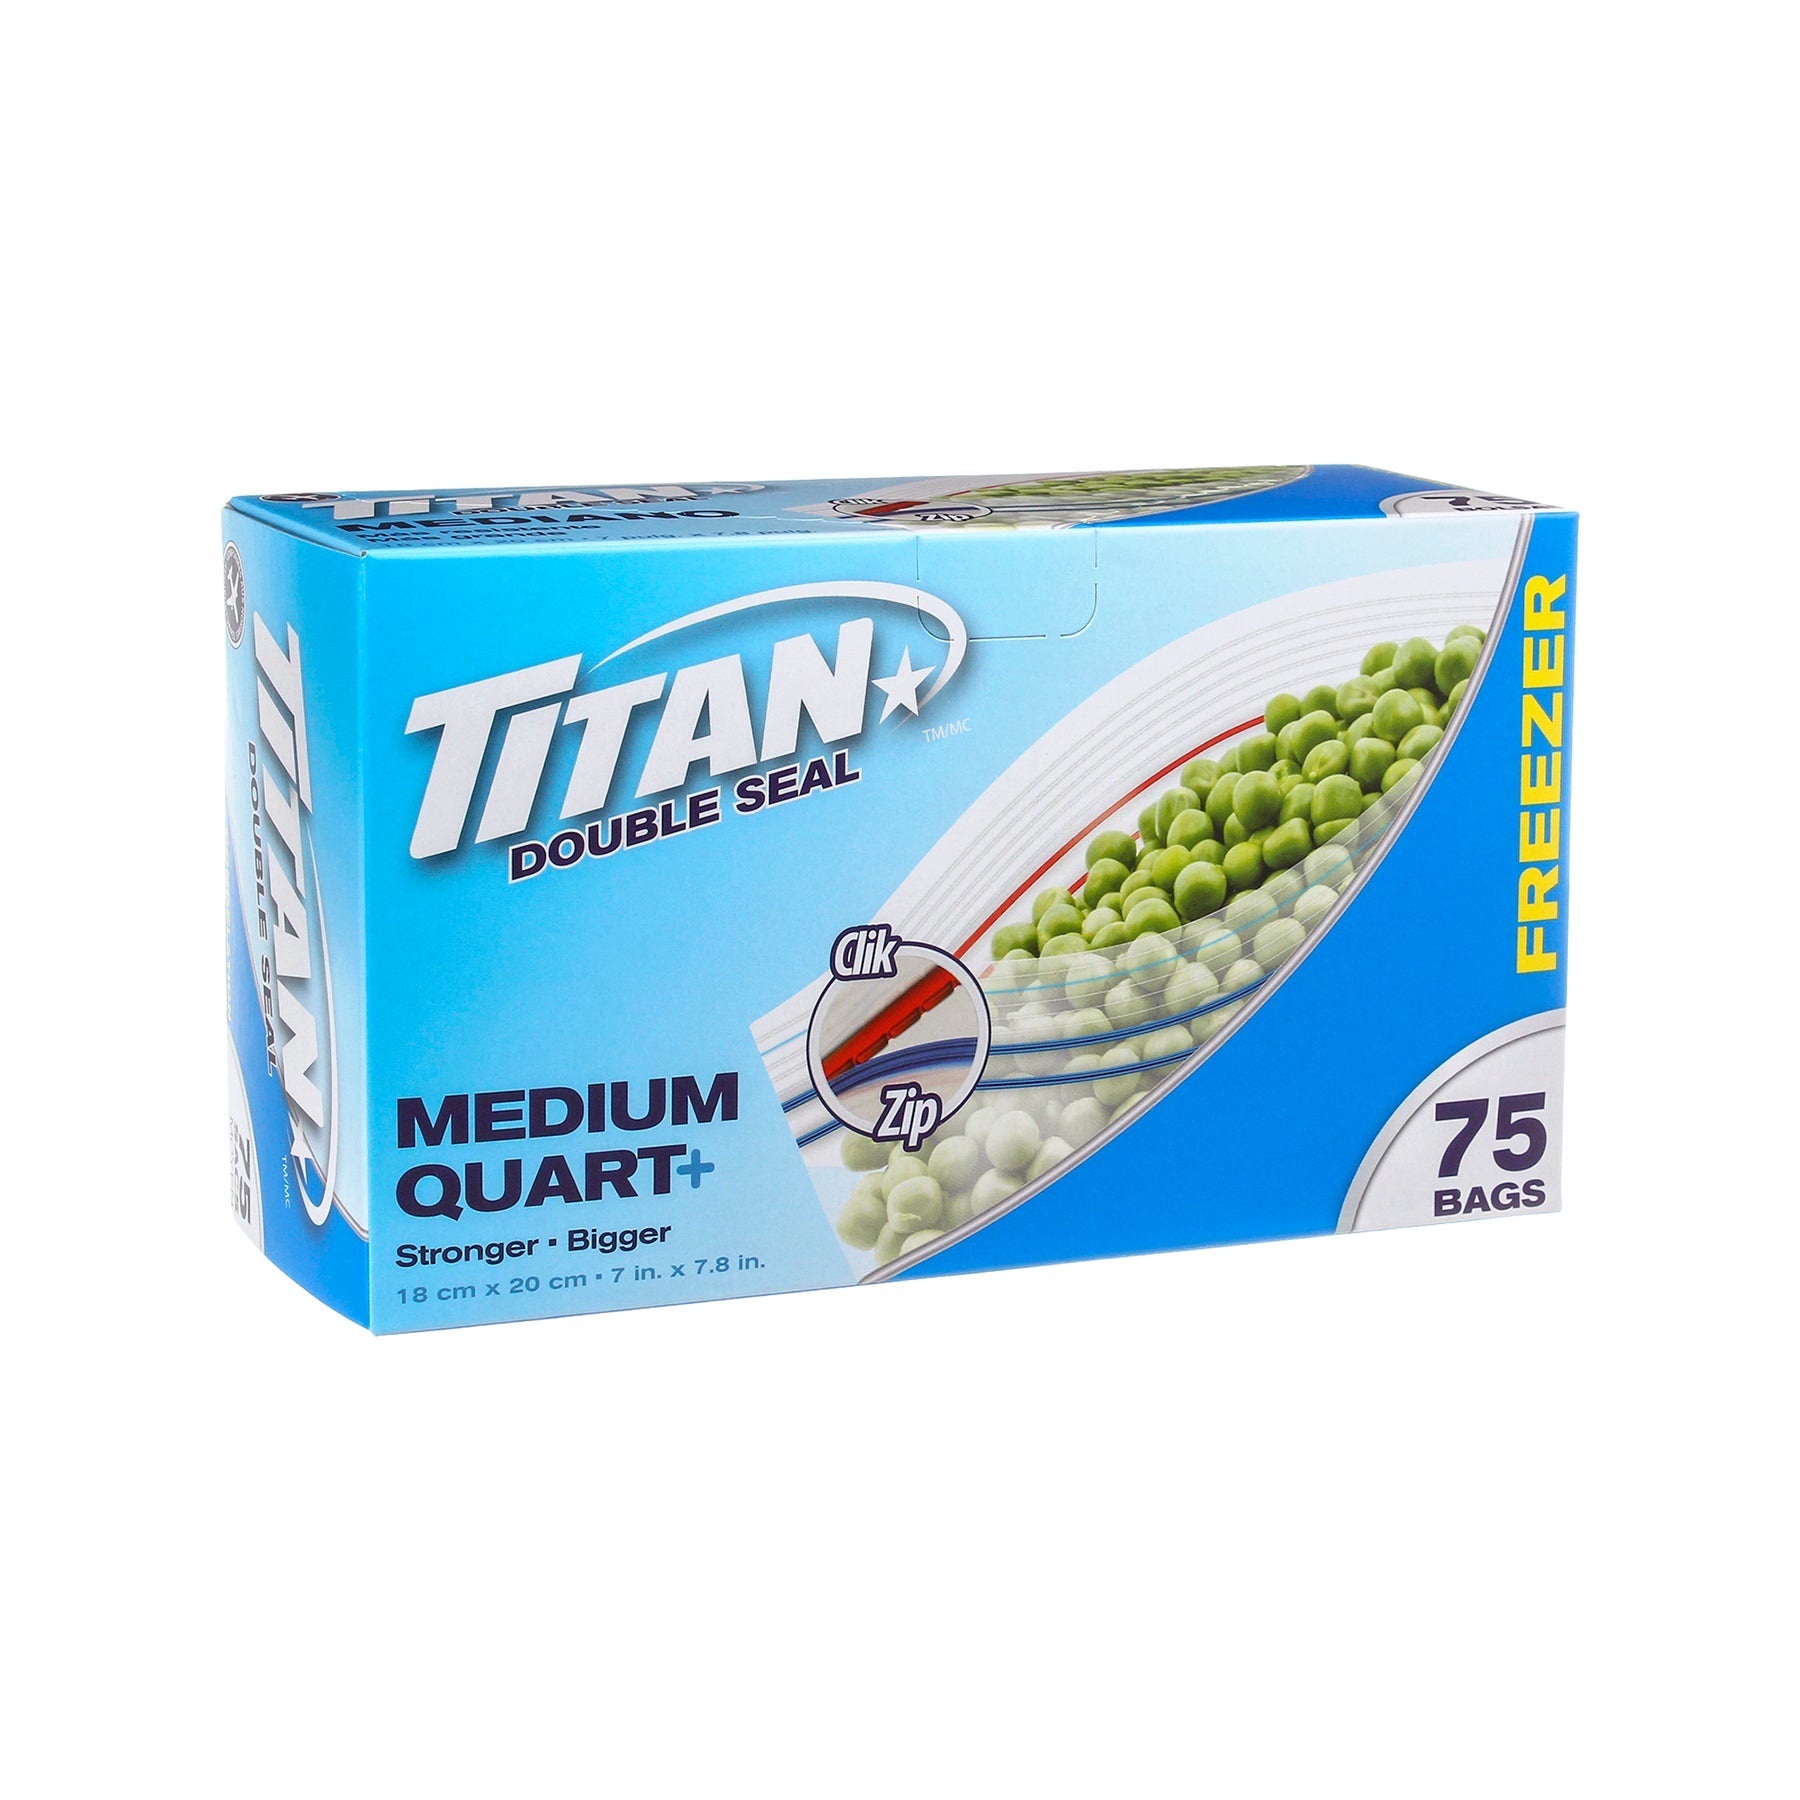 Titan 75 Double Zipper Freezer Bags Medium 7x7.8in